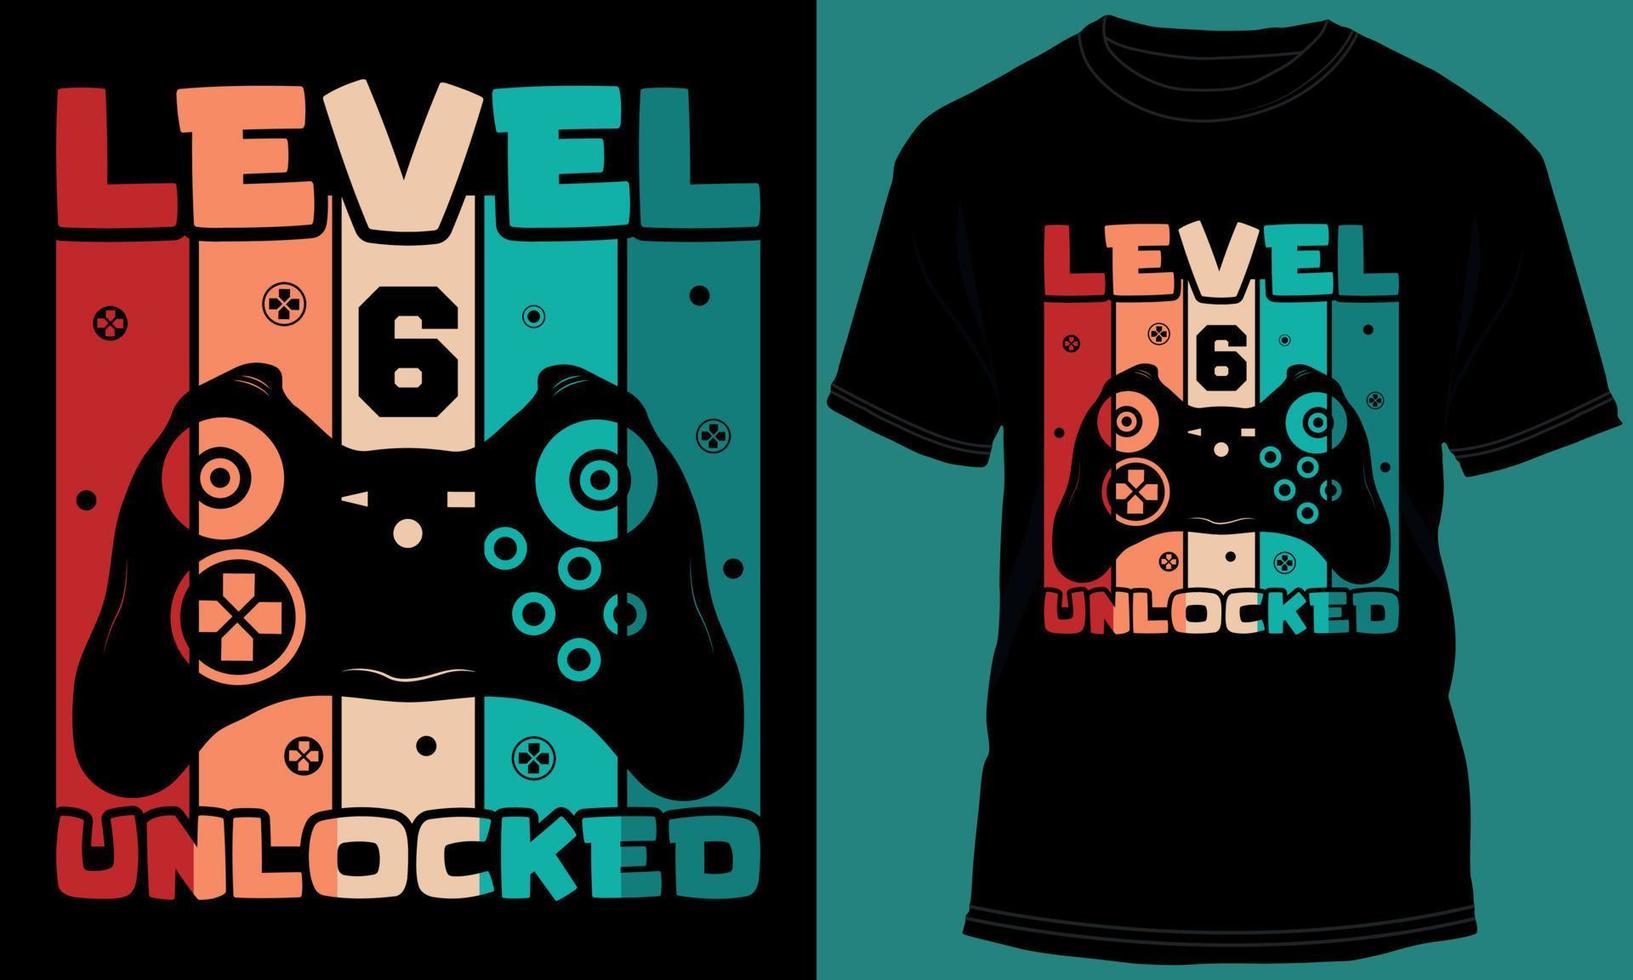 jogador ou jogos nível 6 desbloqueado camiseta Projeto vetor